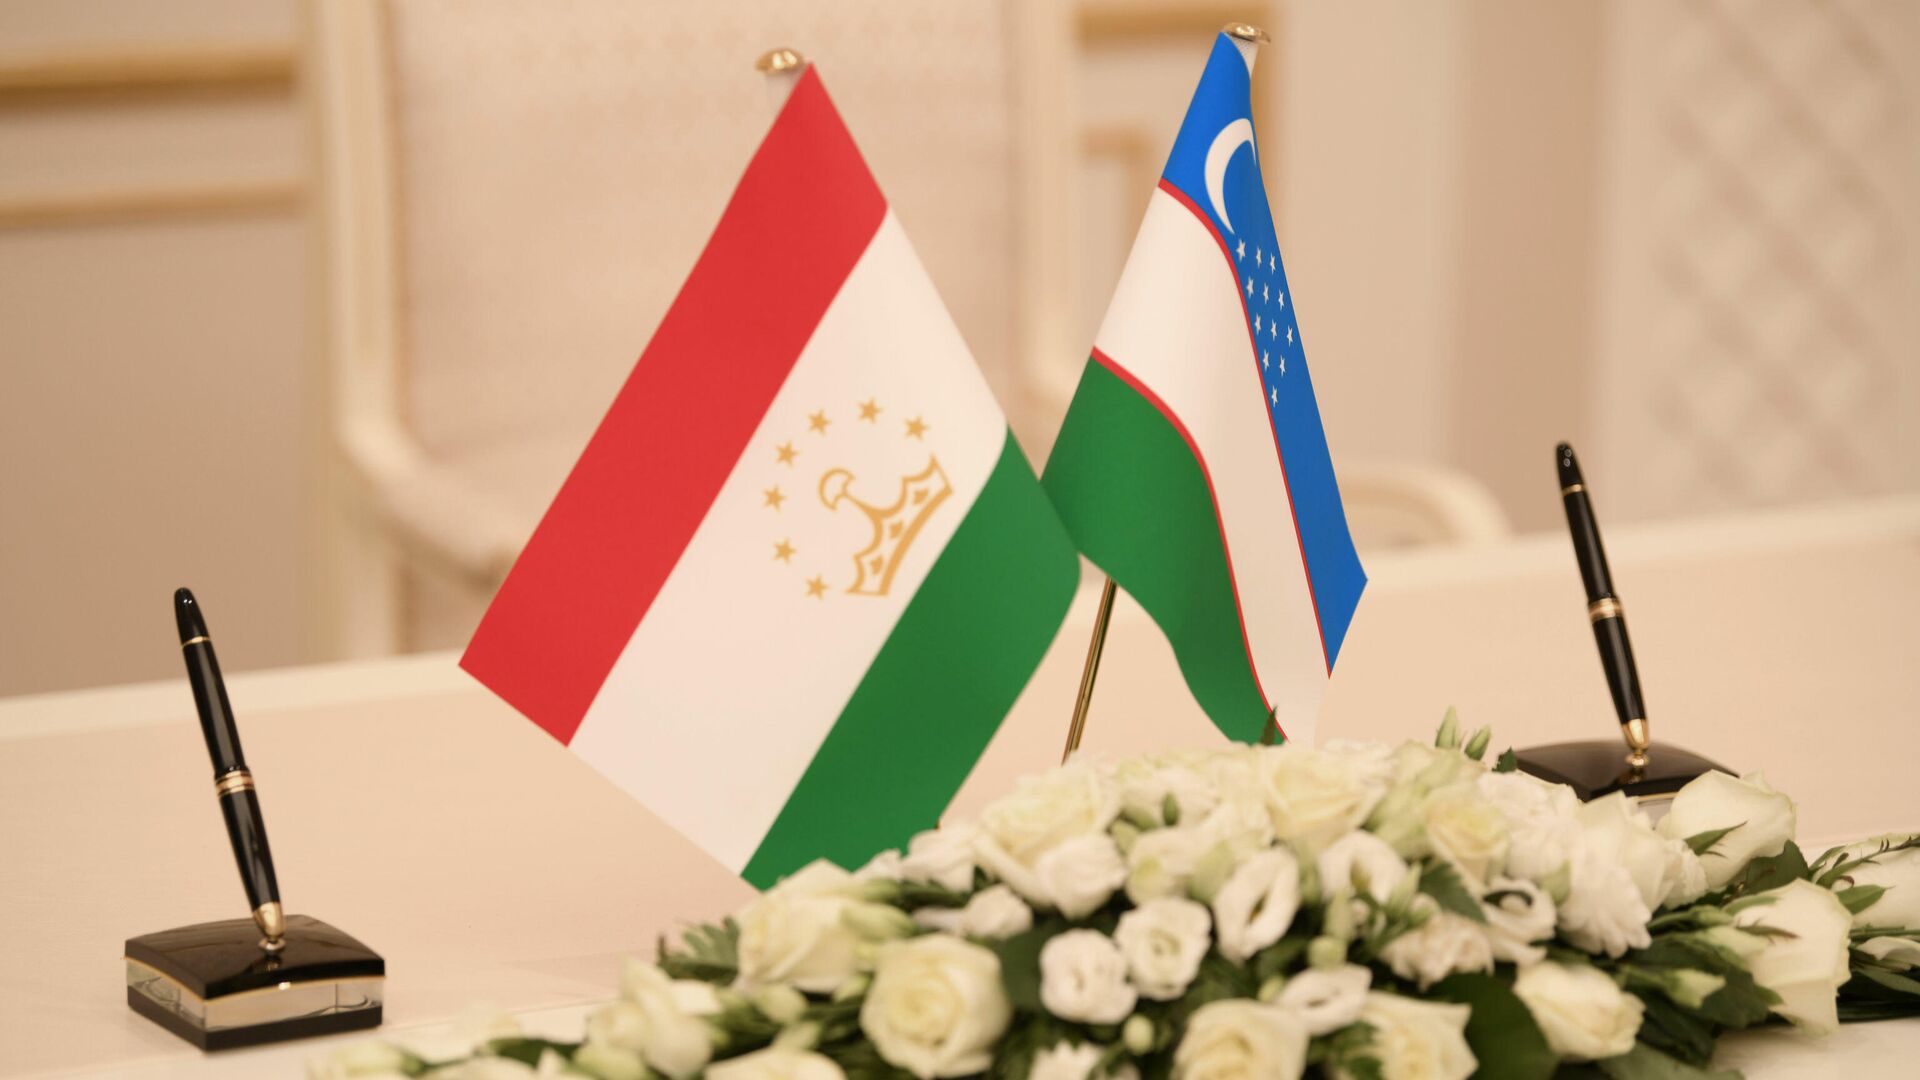 Флаги Узбекистана и Таджикистана - Sputnik Таджикистан, 1920, 07.12.2021